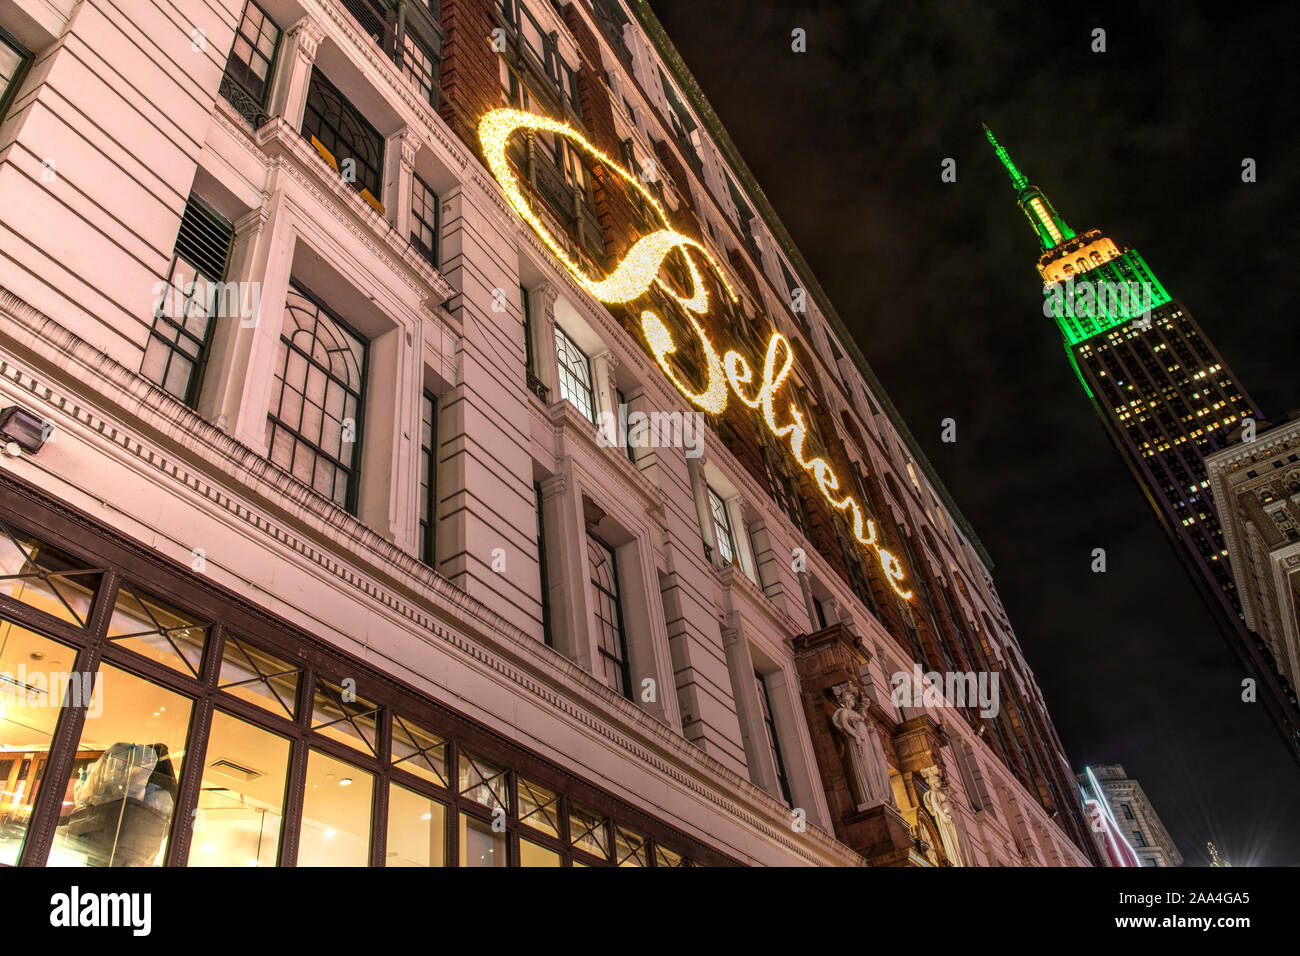 Macy's Kaufhaus mit Glauben Leuchtreklame auf die Fassade des Gebäudes, Herald Square, Manhattan, New York, USA Stockfoto